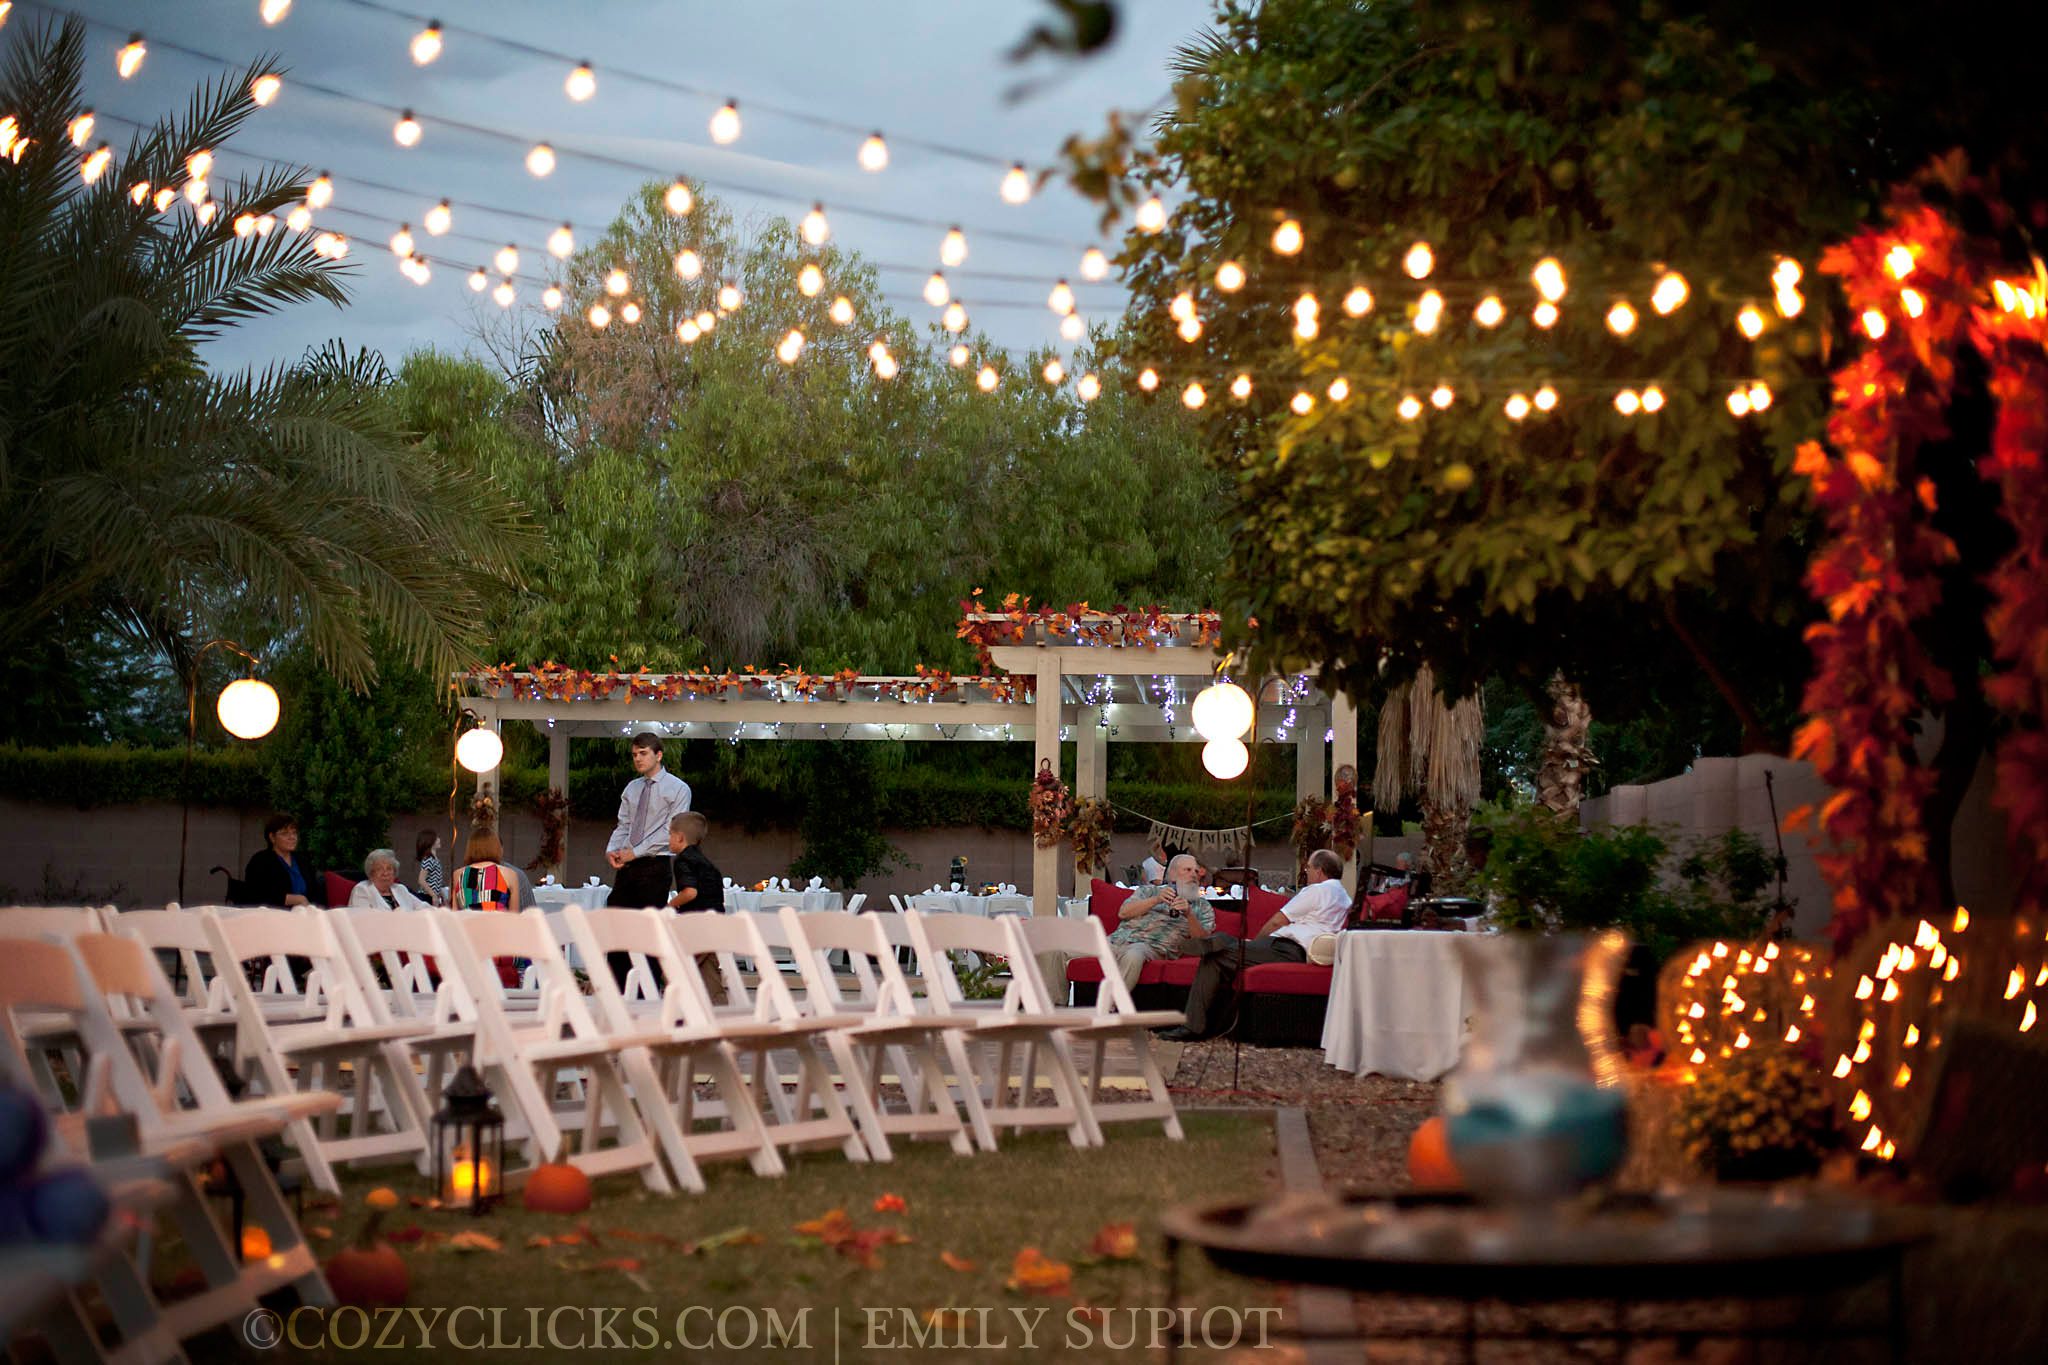 Backyard Wedding Photography in Chandler Arizona